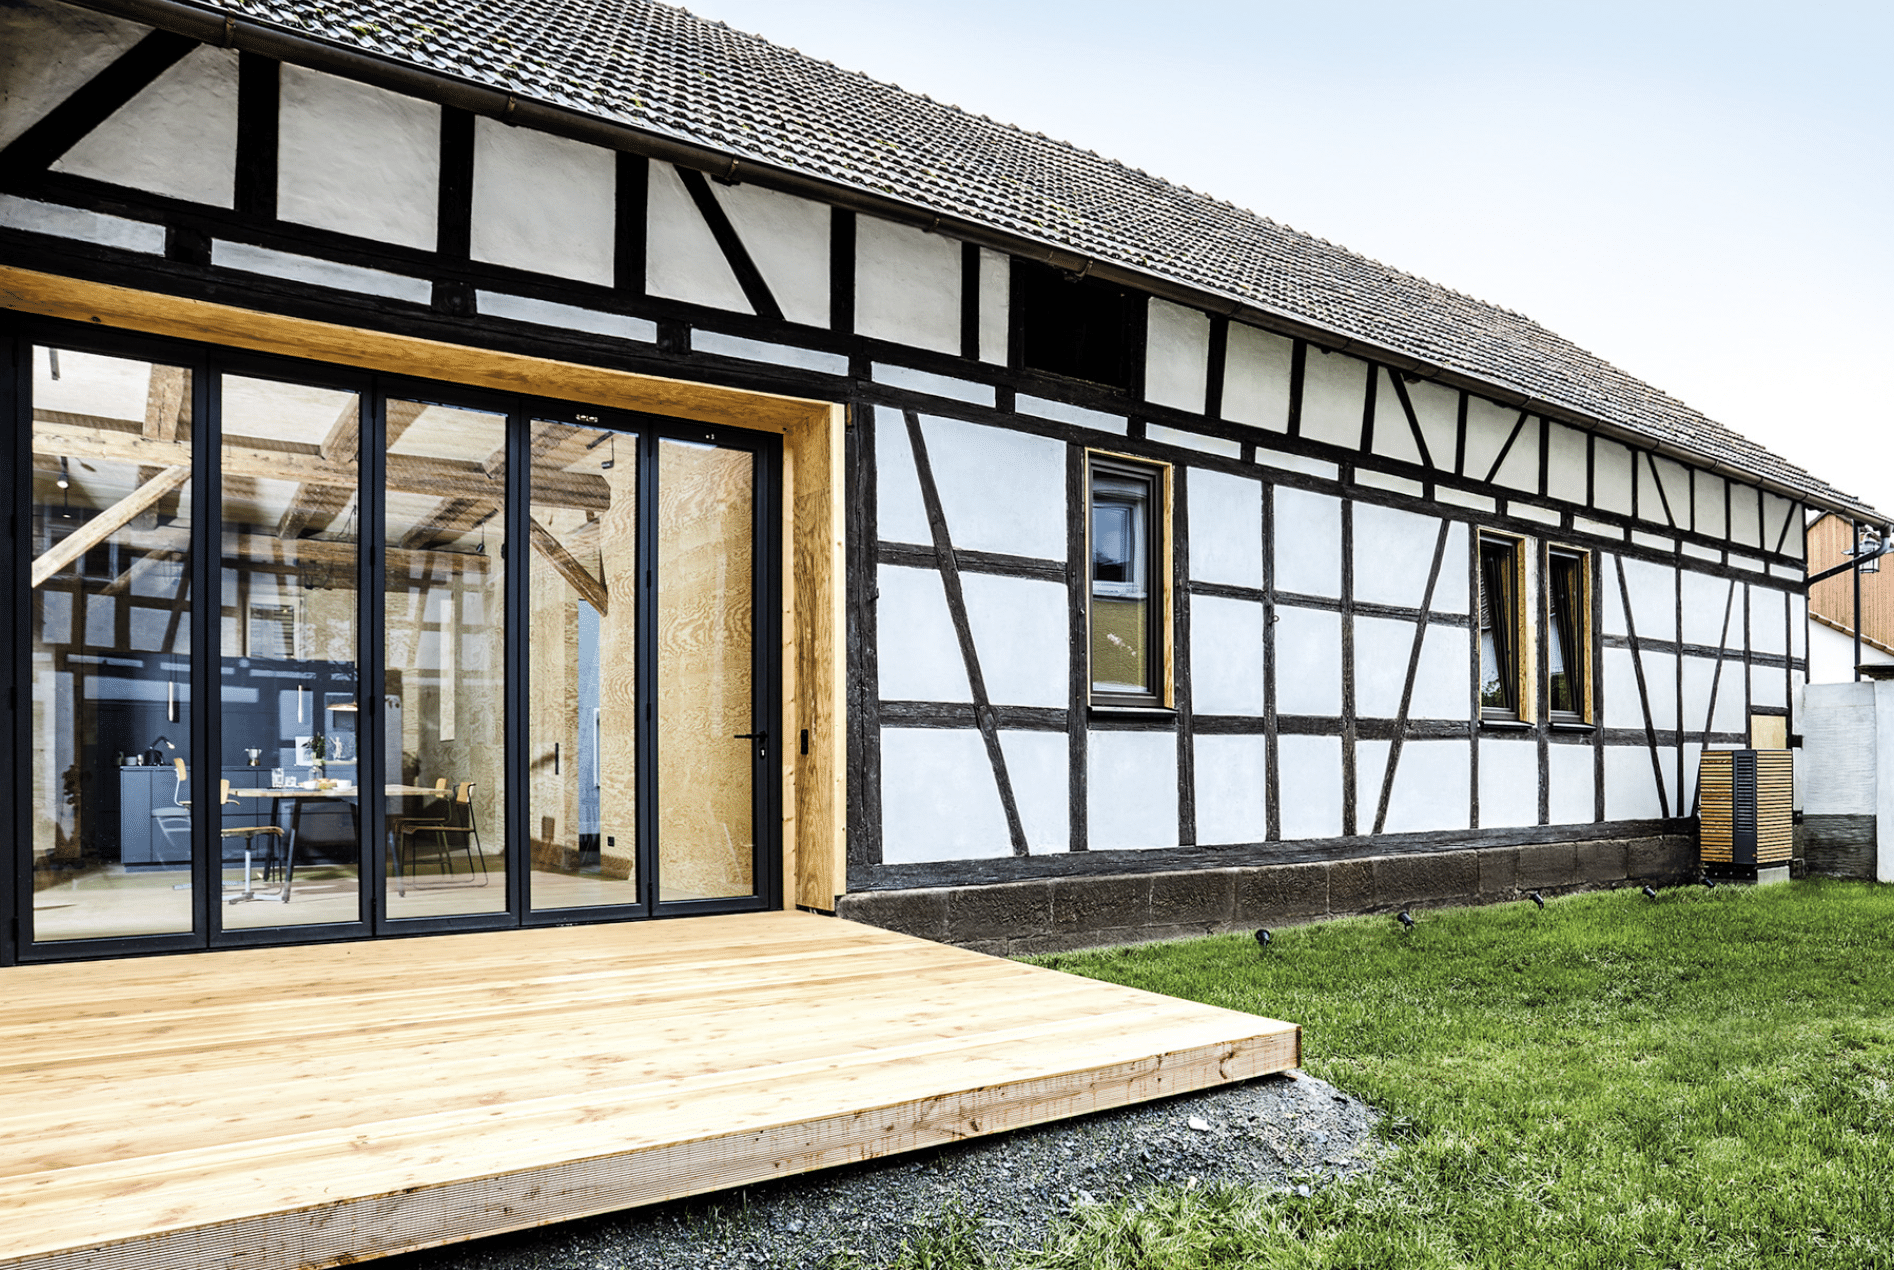 Dimplex zeigt eine Wärmepumpe mit Holzverkleidung im Außenbereich eines älteren Landhauses mit großer Terrasse.